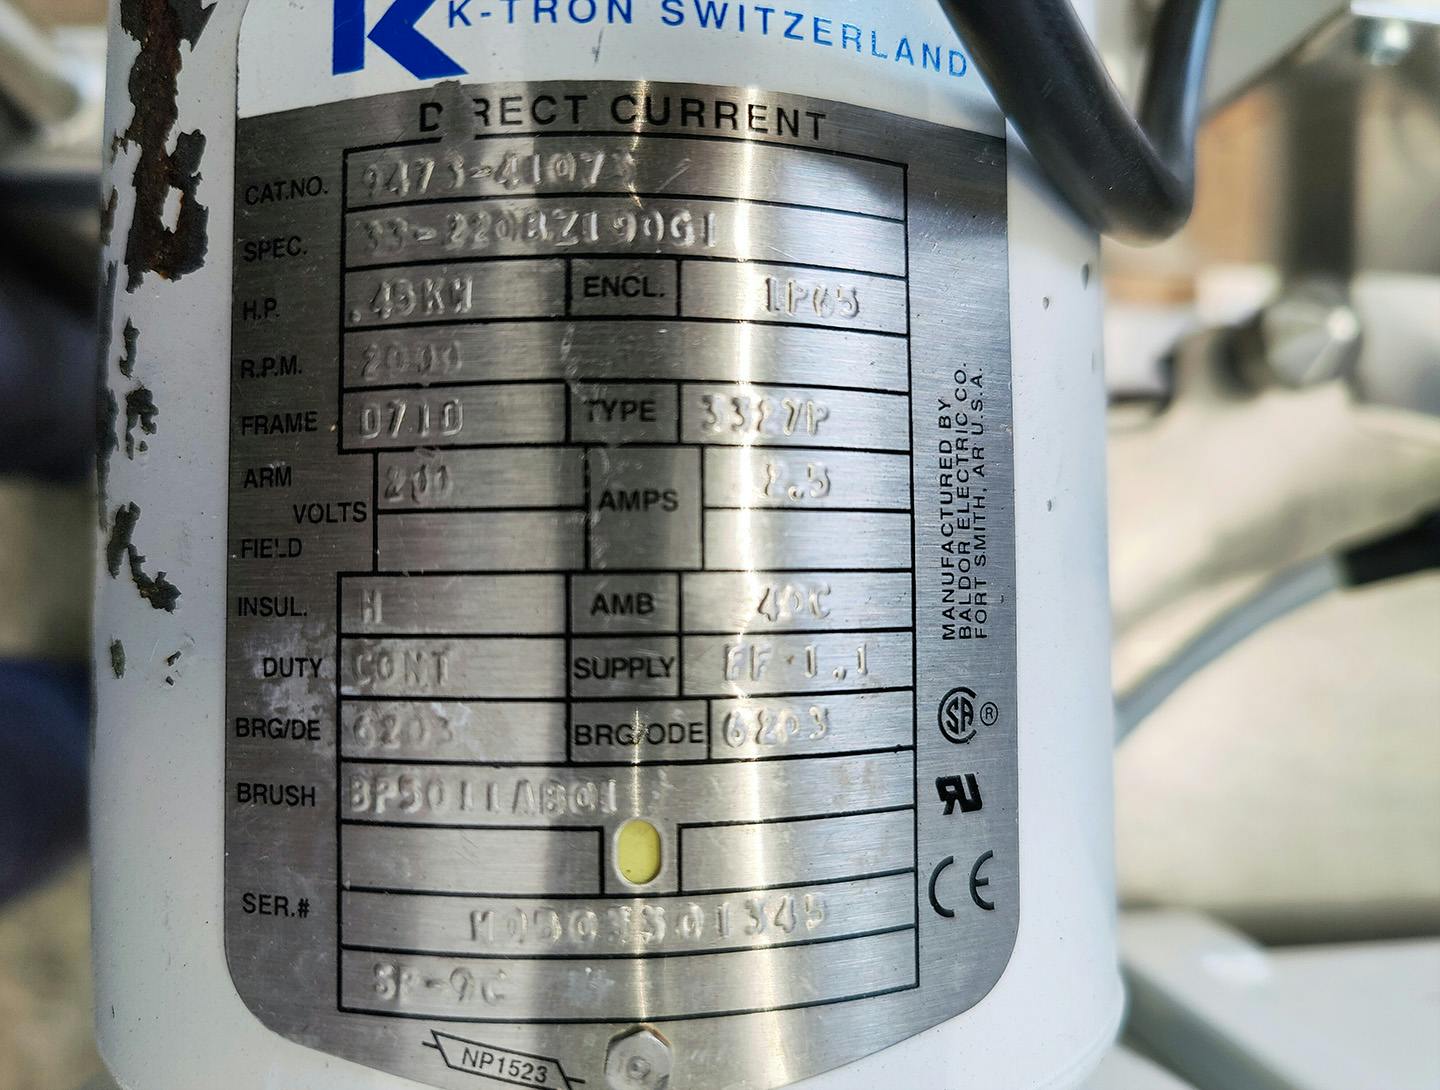 K-tron K2-ML-T35 loss-in-weight feeders - Dosierschnecke - image 9